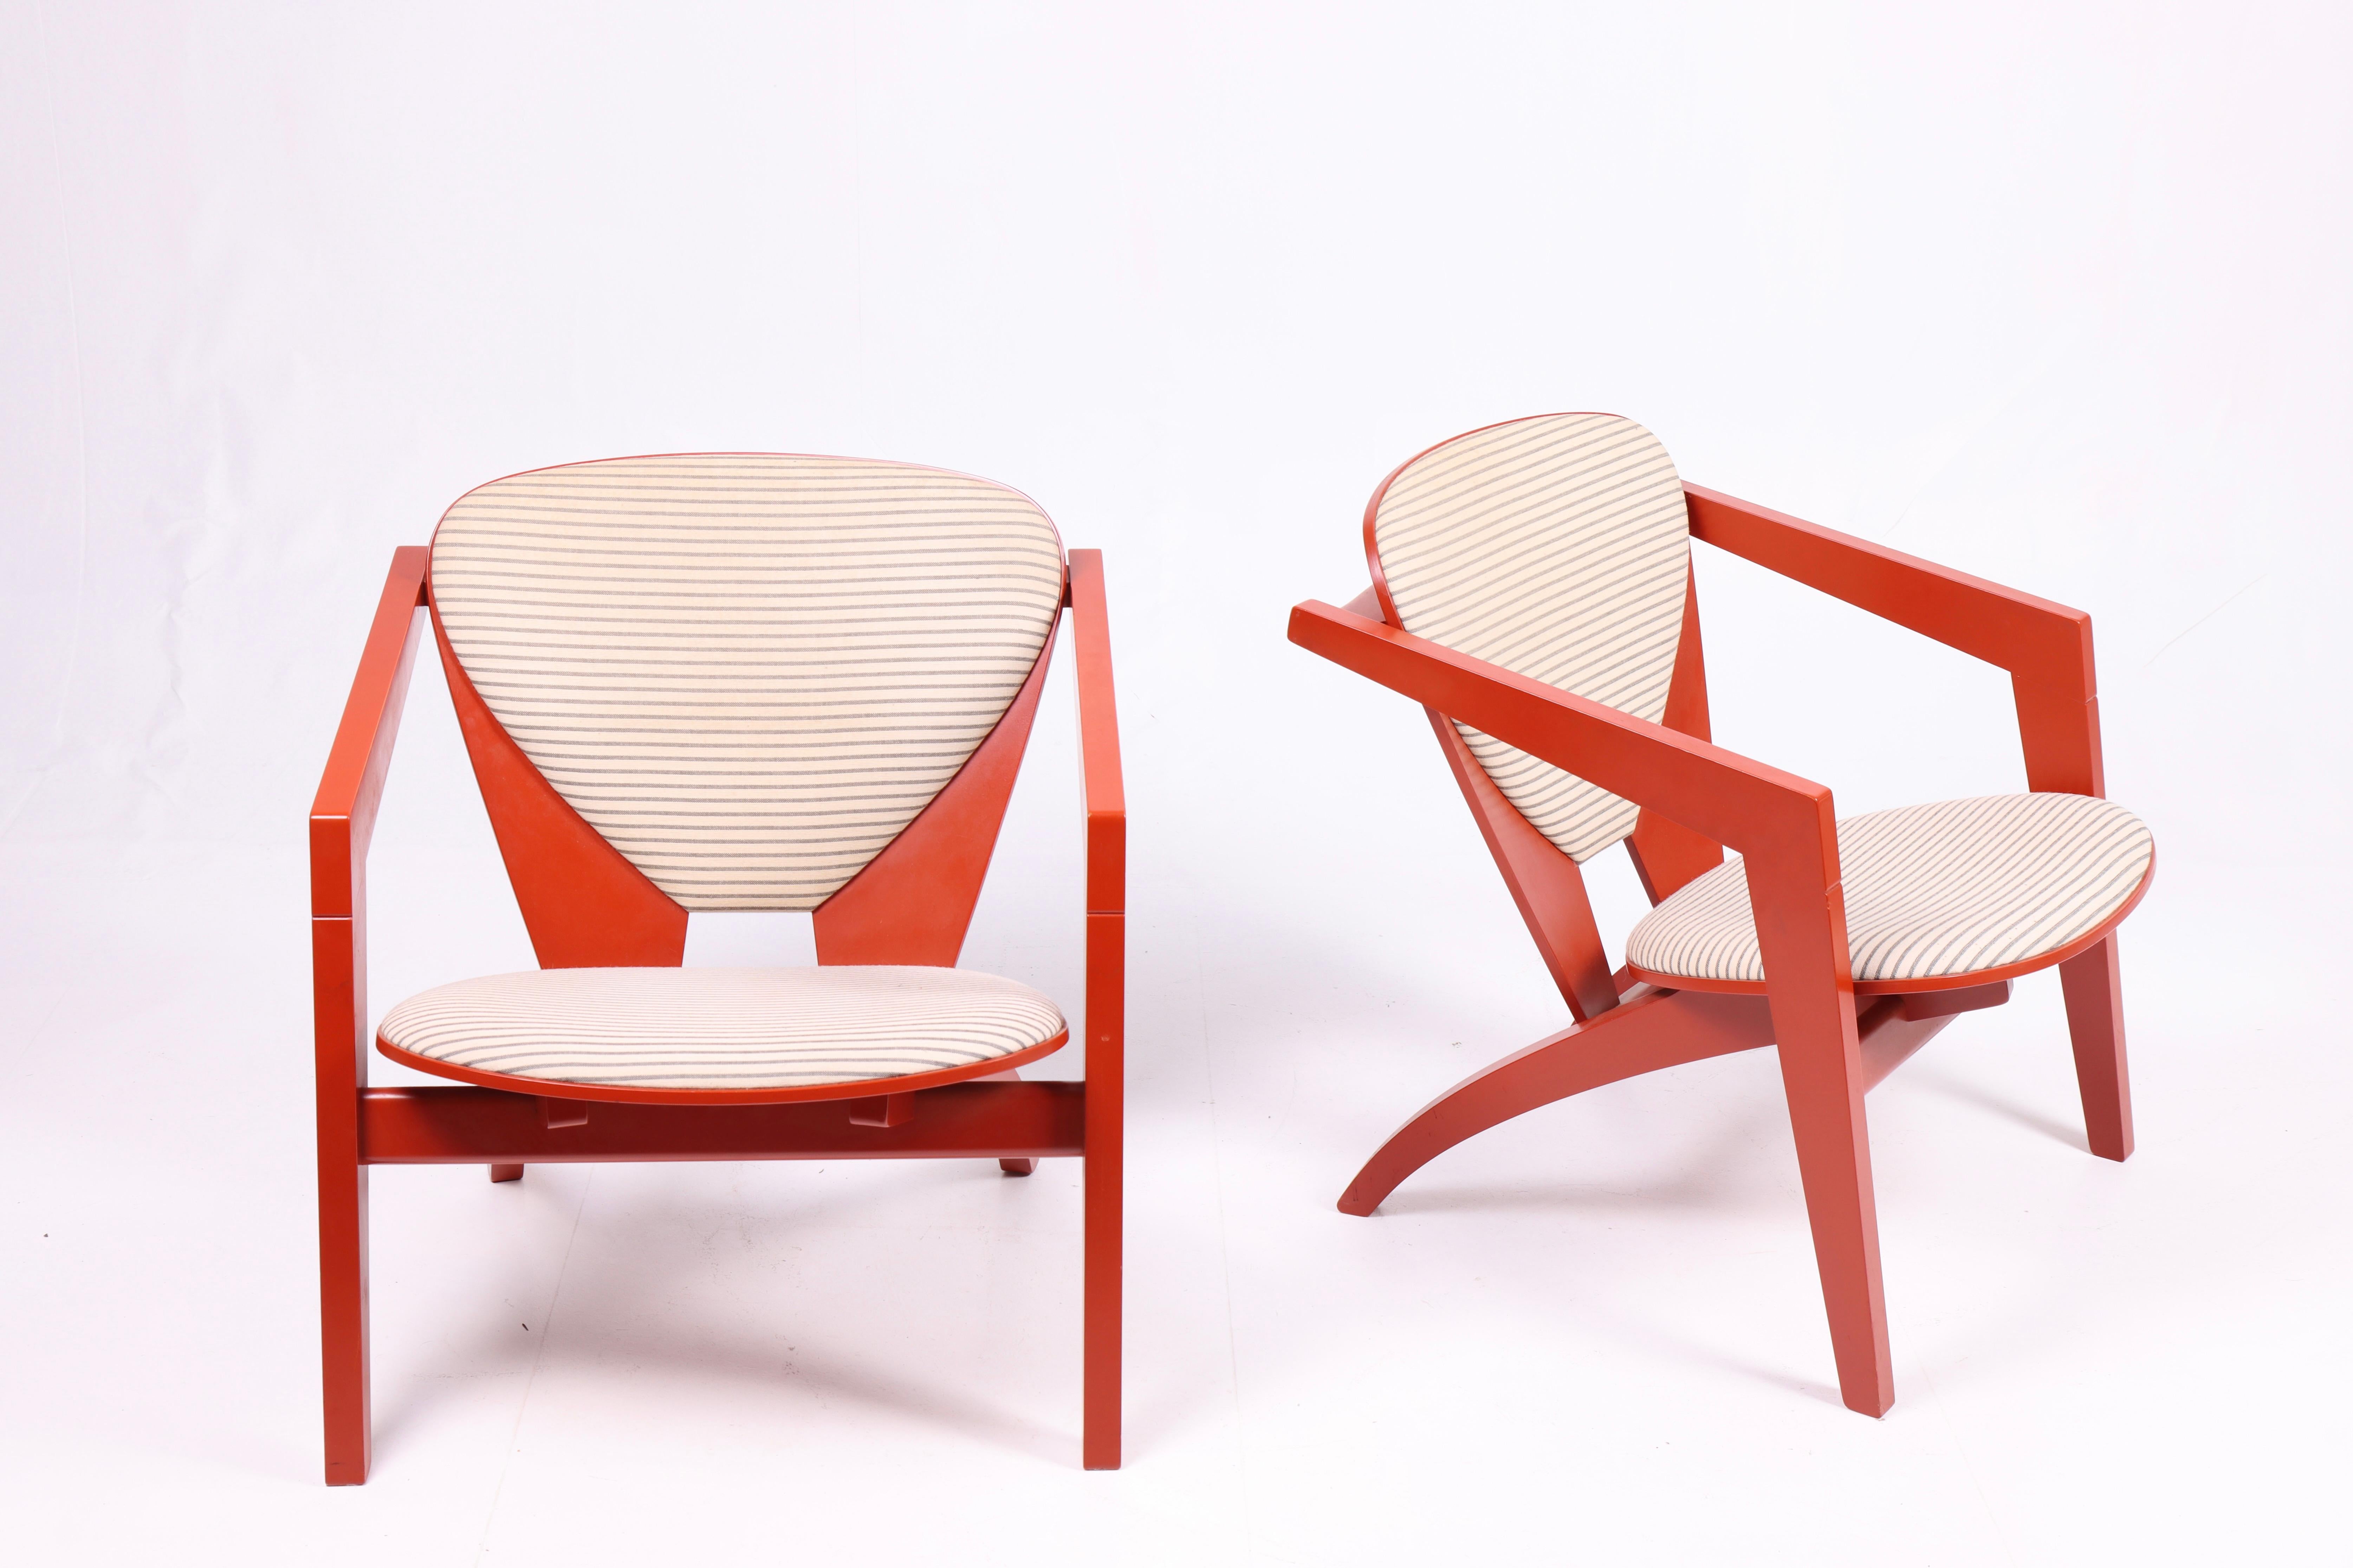 Ein Paar GE 460 Lounge Chairs im Originalzustand. Entworfen von Hans J. Wegner M.A.A. für GETAMA im Jahr 1978. Toller Zustand. Hergestellt in Dänemark.